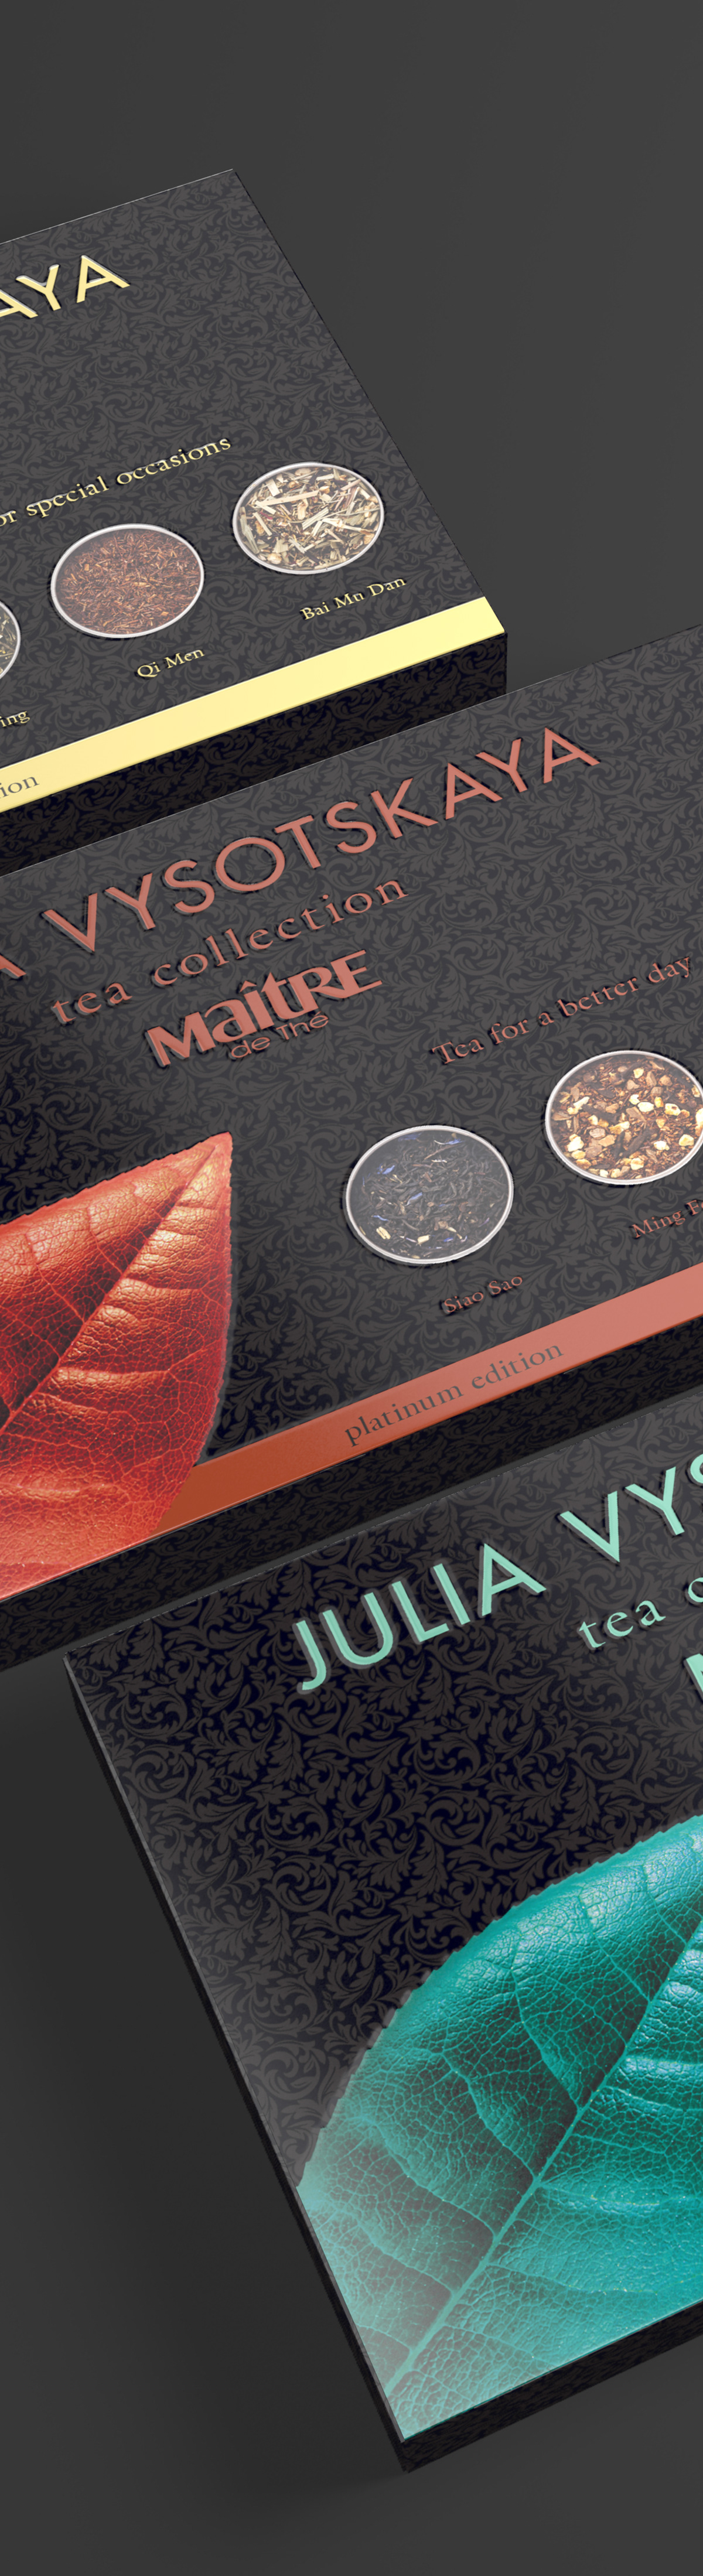 maitre tea package product design Render 3D graphics shot